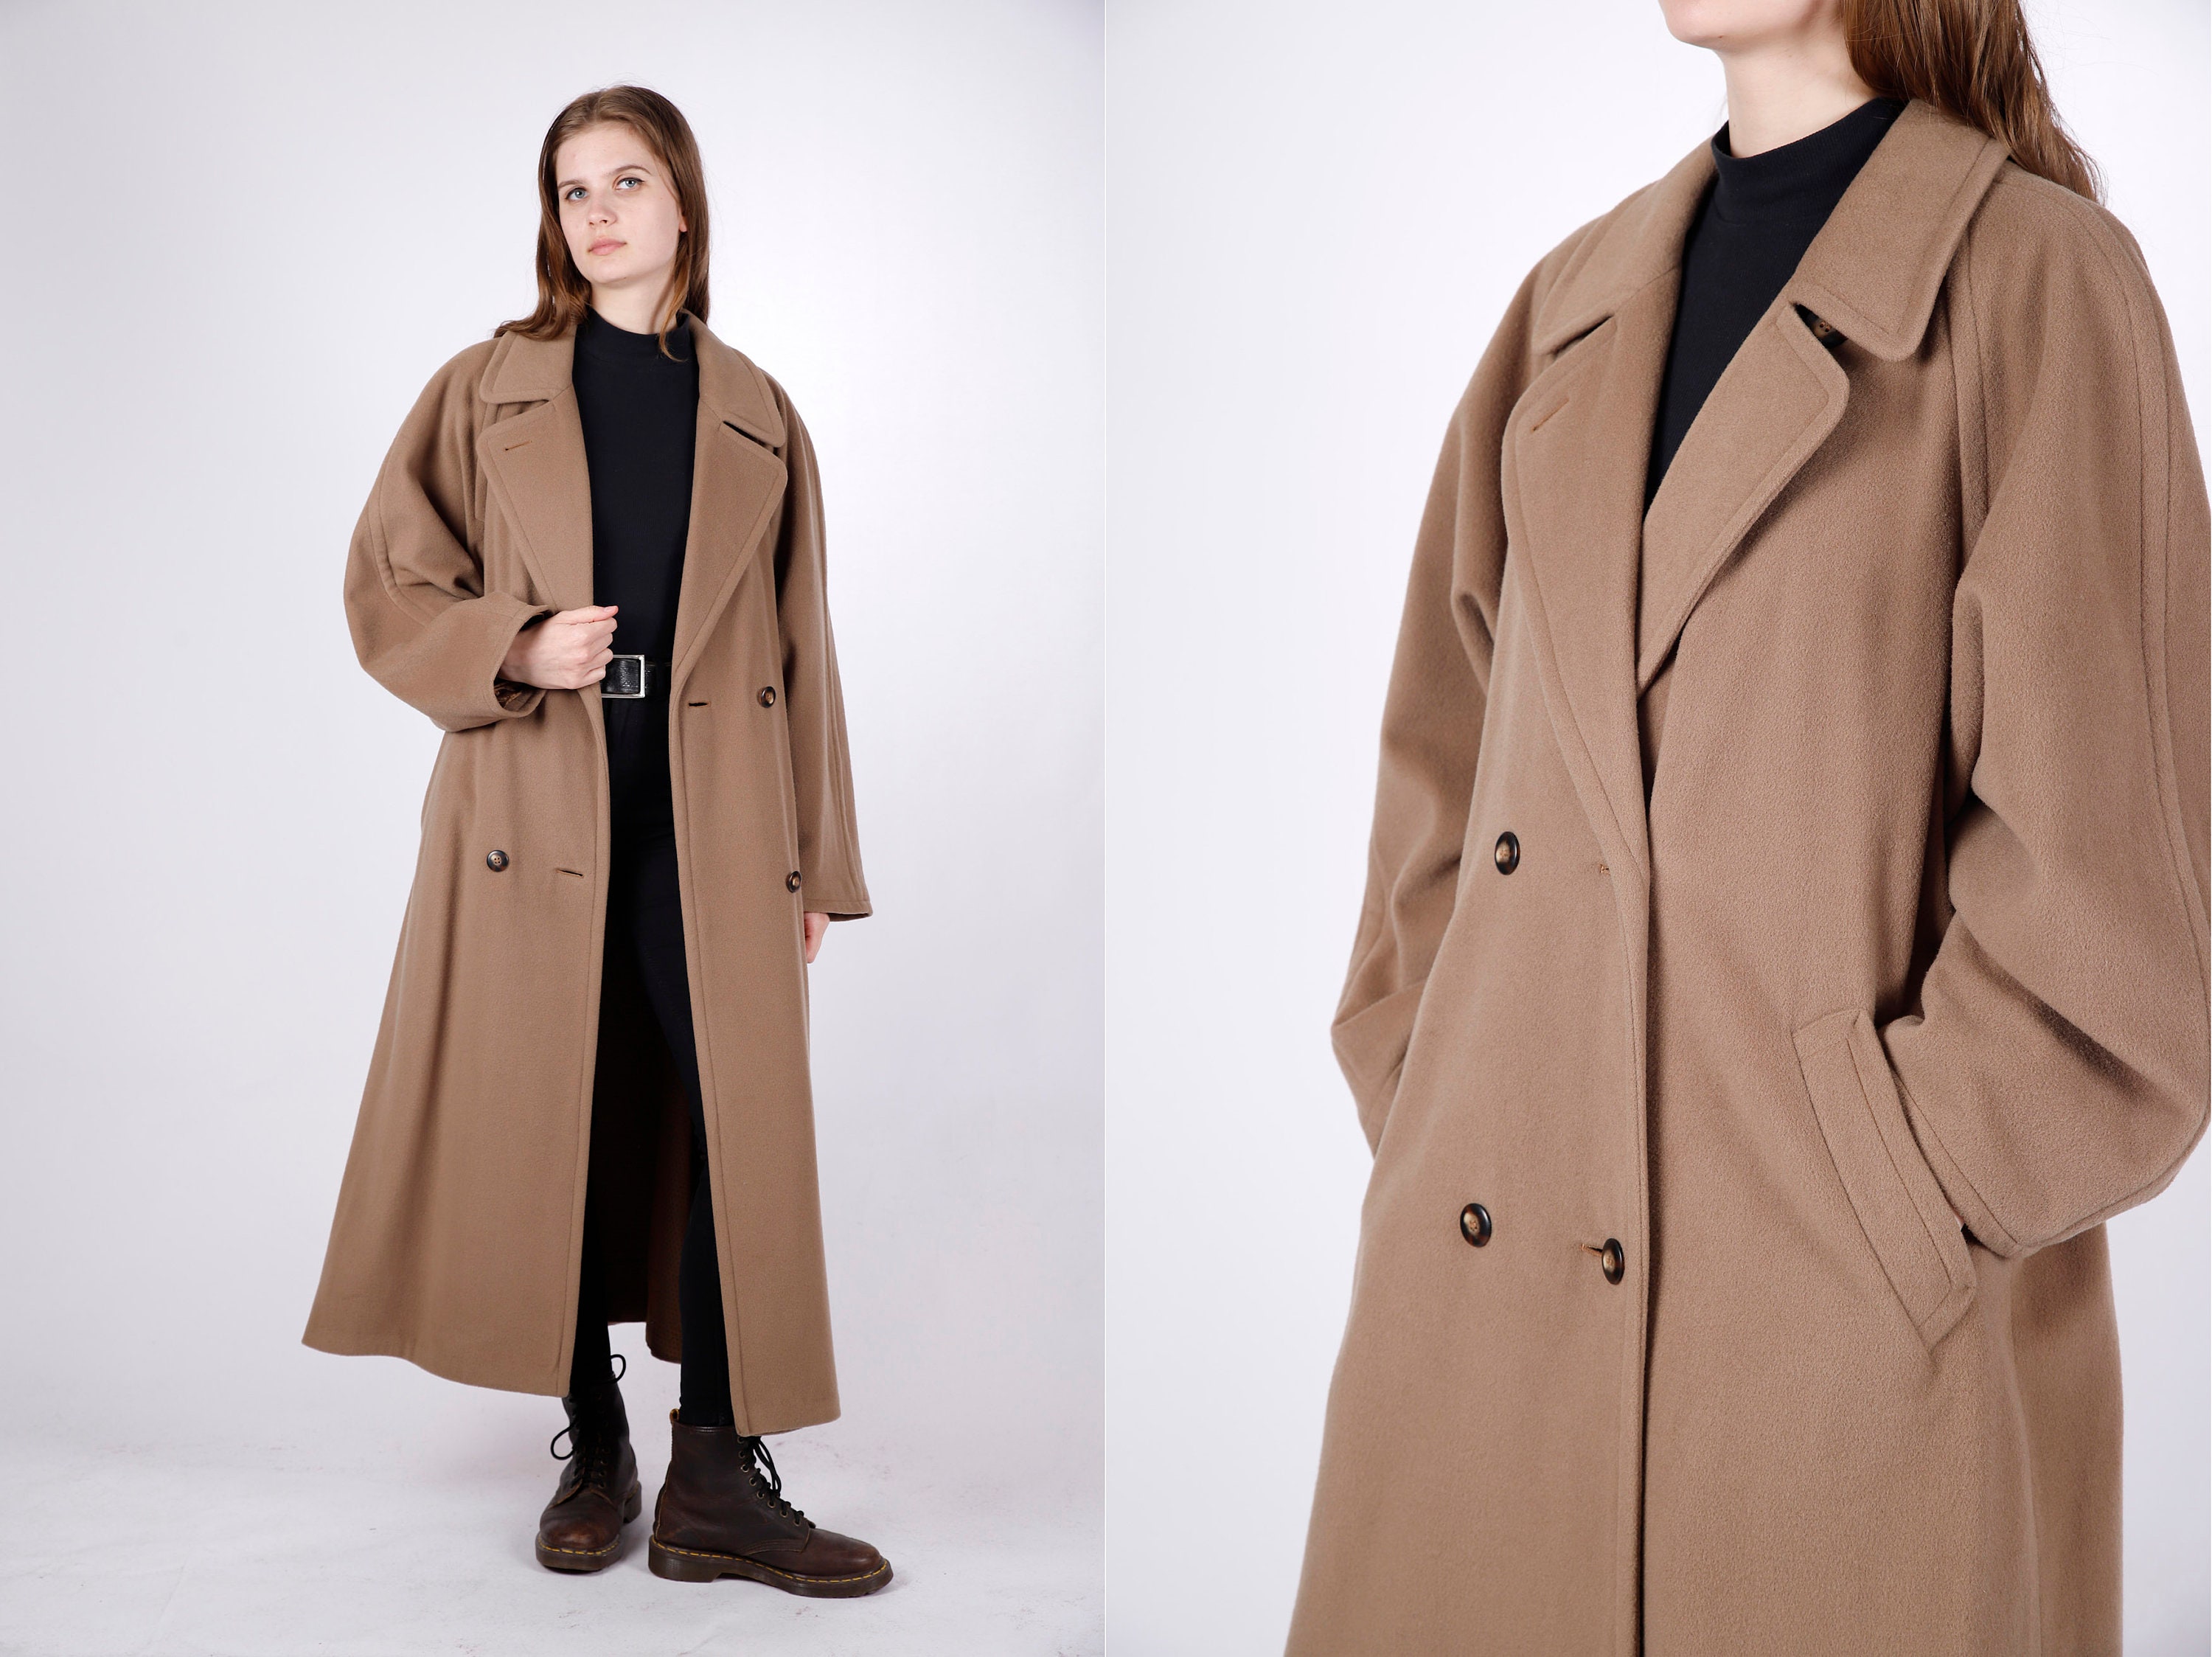 Estella | Goff Hooded Wrap Coat in Black Virgin Wool Medium